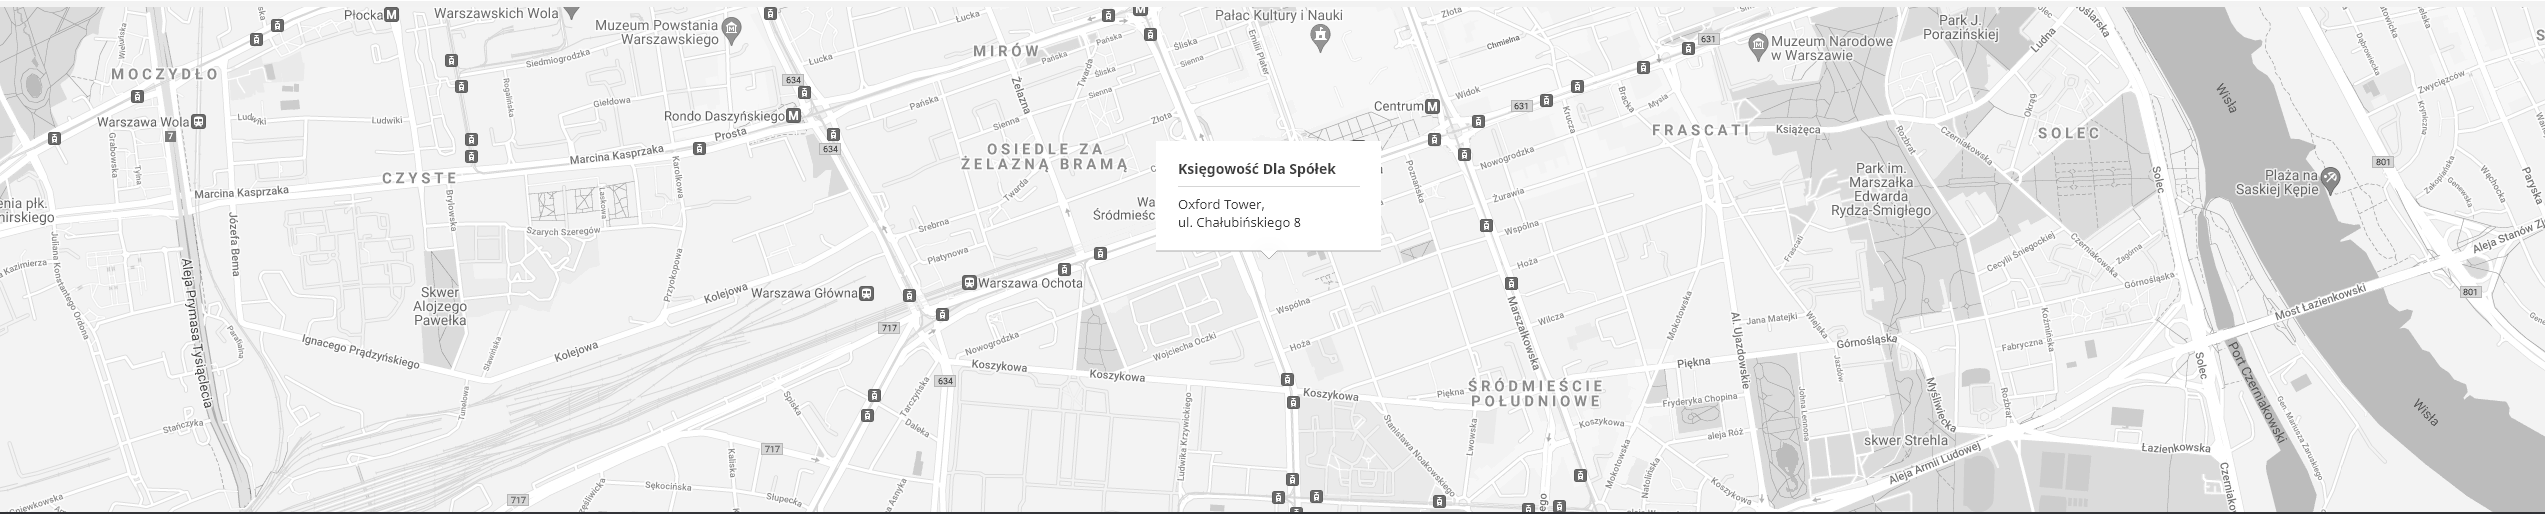 KDS Google Map.